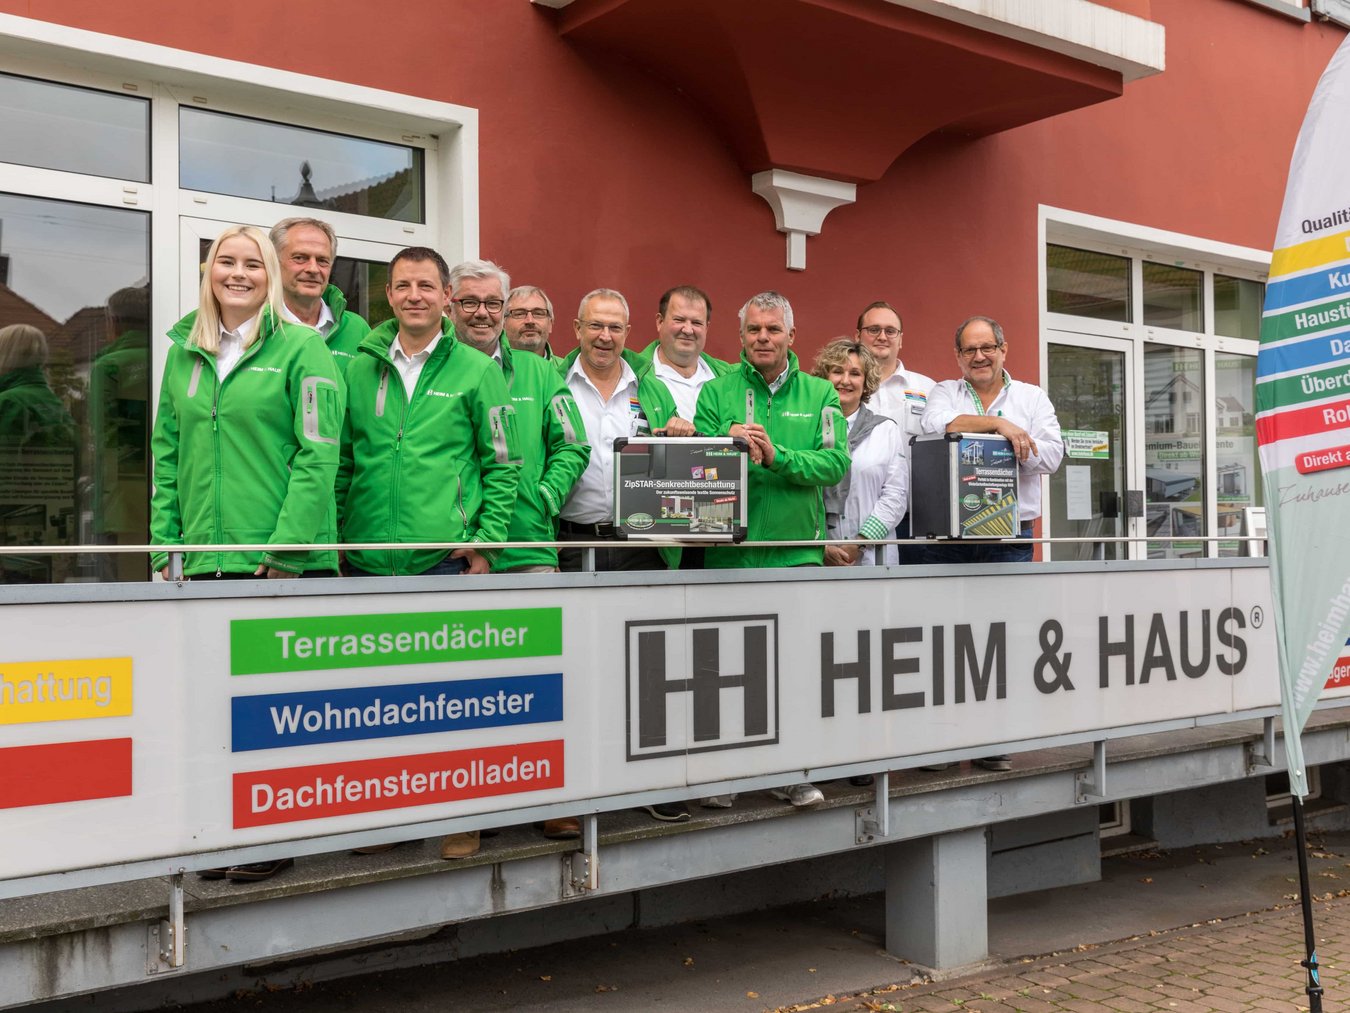 HEIM & HAUS Teamfoto der Verkaufsleitung Kaiserslautern mit 2 HEIM & HAUS Koffern